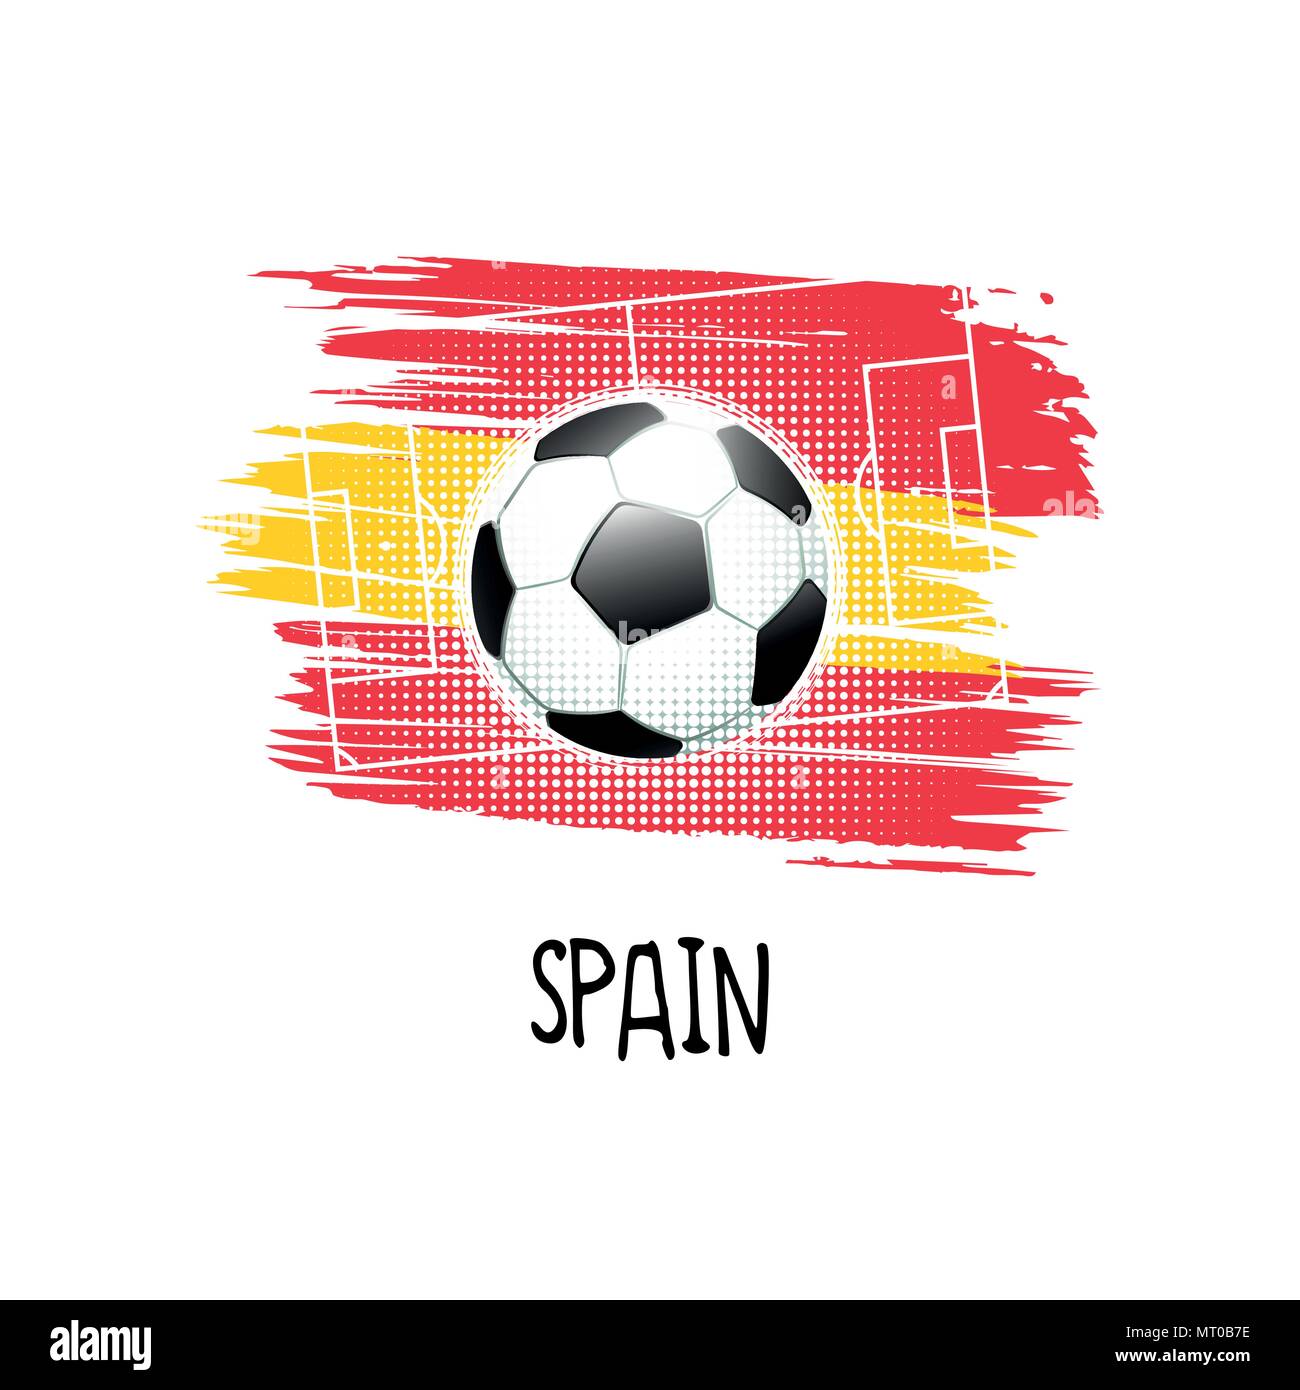 Schmerzen der Hand geschriebene Wort" mit Fußball, Fußballplatz und abstrakte Farben der spanischen Flagge. Vector Illustration. Stock Vektor